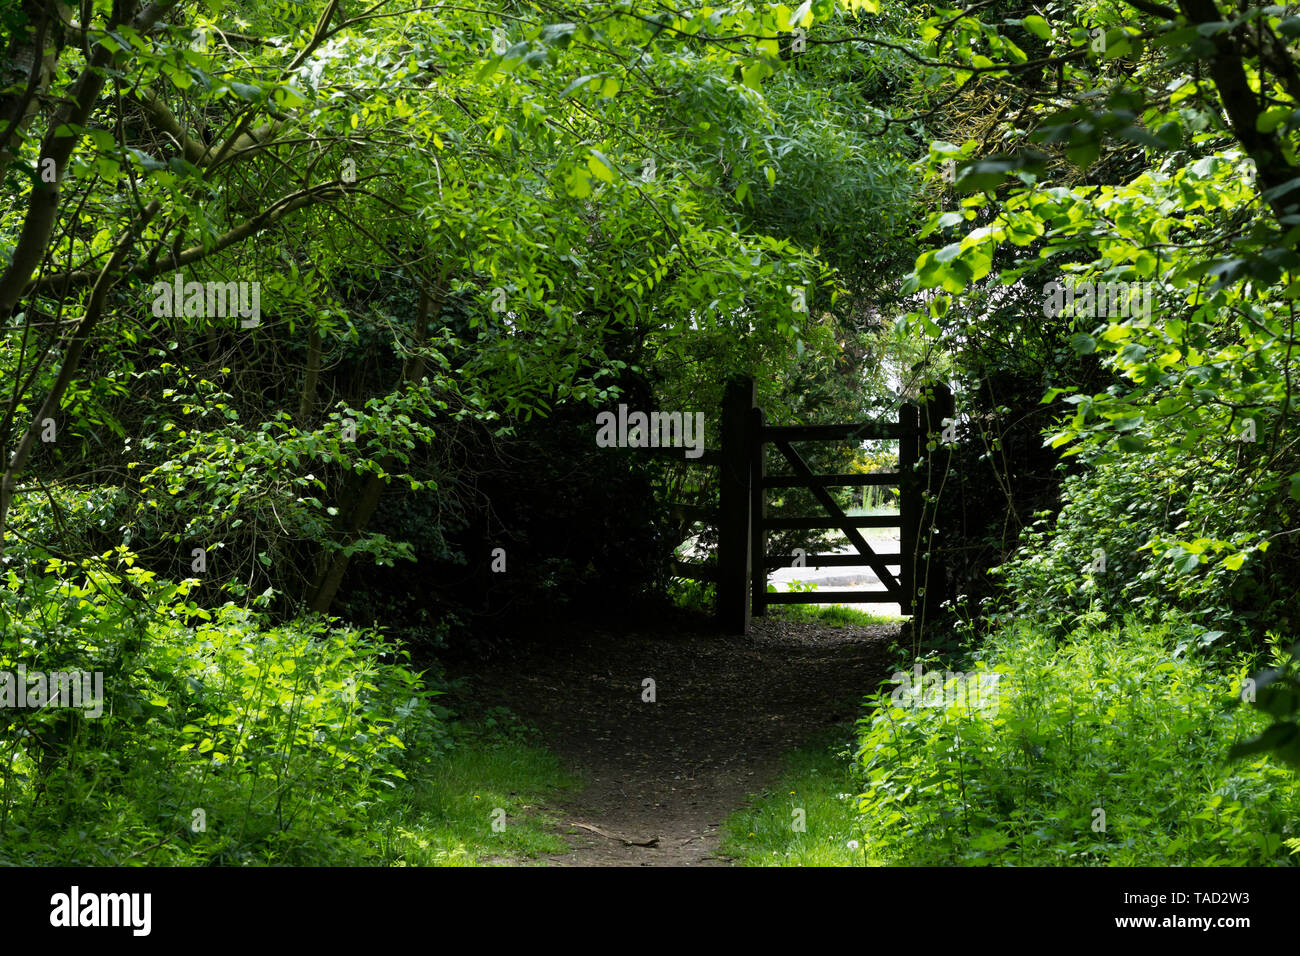 Secret gateway through trees Milton park, cambridge, 2019 Stock Photo